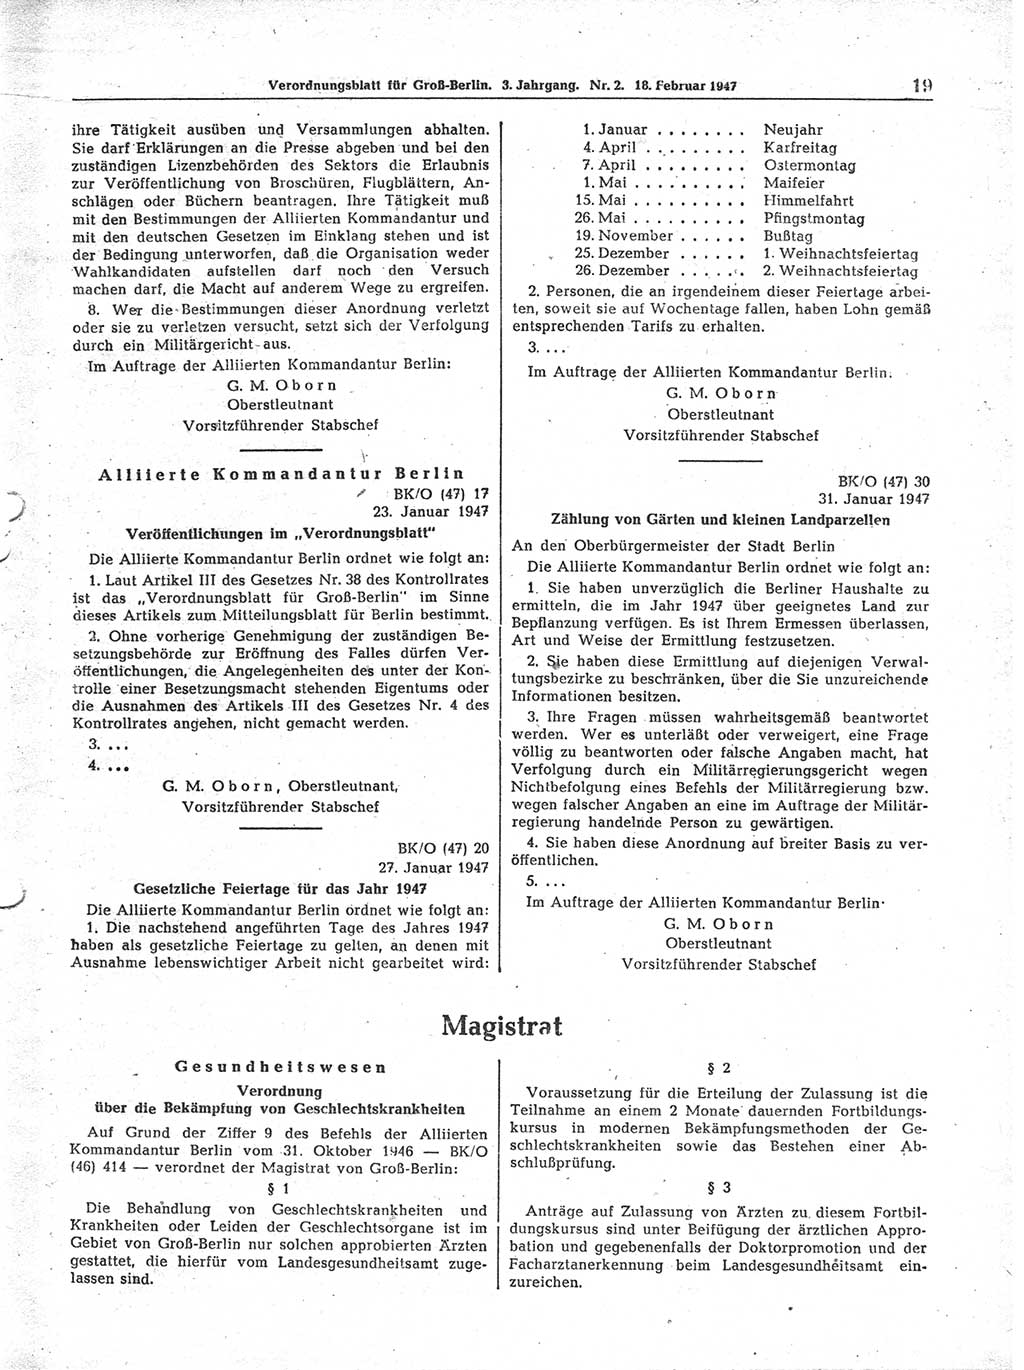 Verordnungsblatt (VOBl.) für Groß-Berlin 1947, Seite 19 (VOBl. Bln. 1947, S. 19)